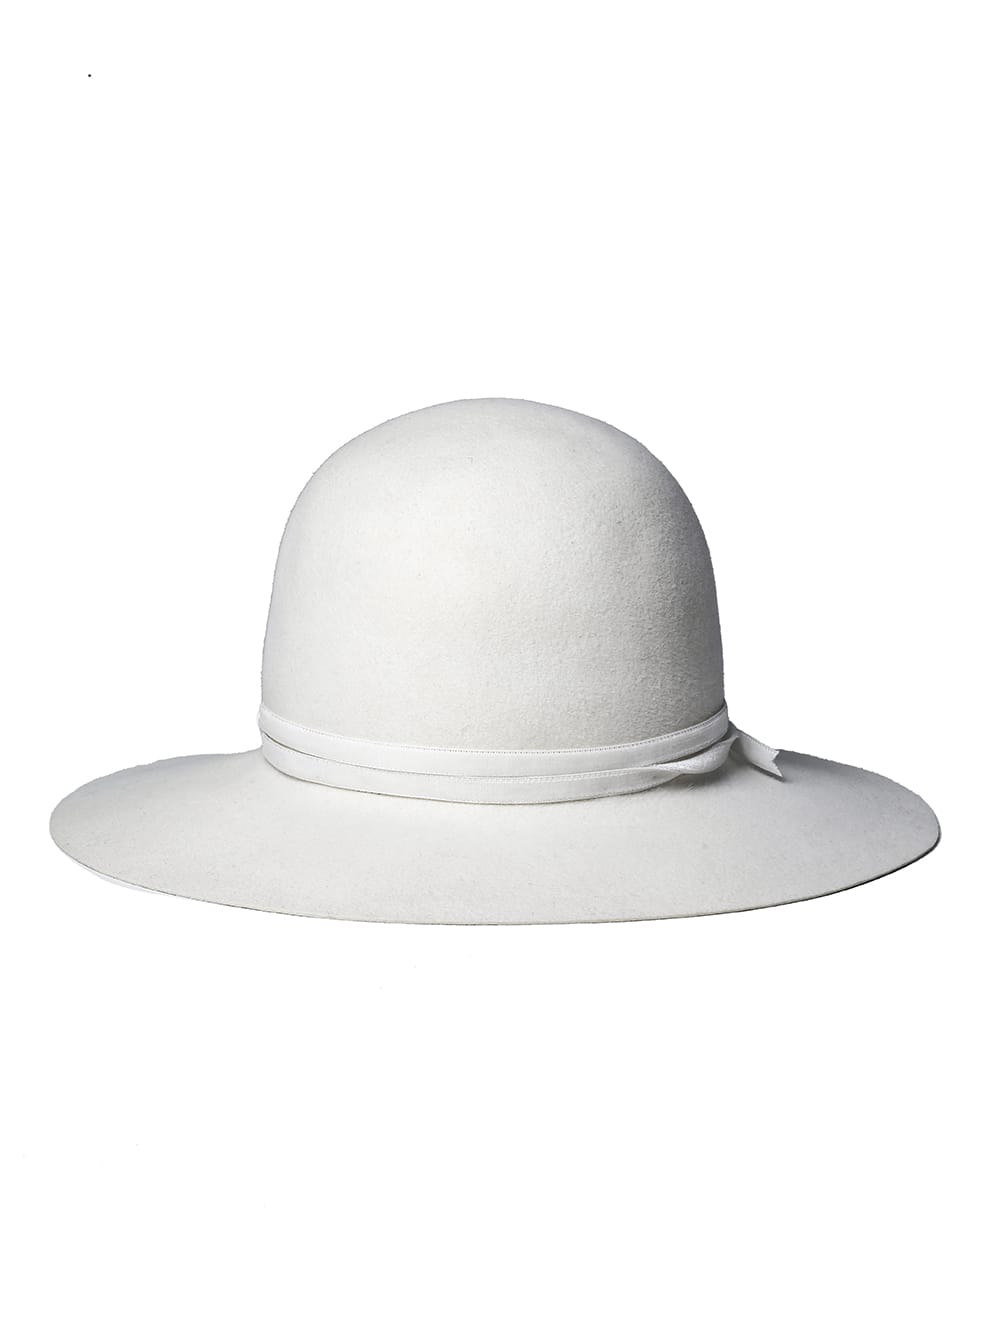 bowler hat./velvet ribbon.